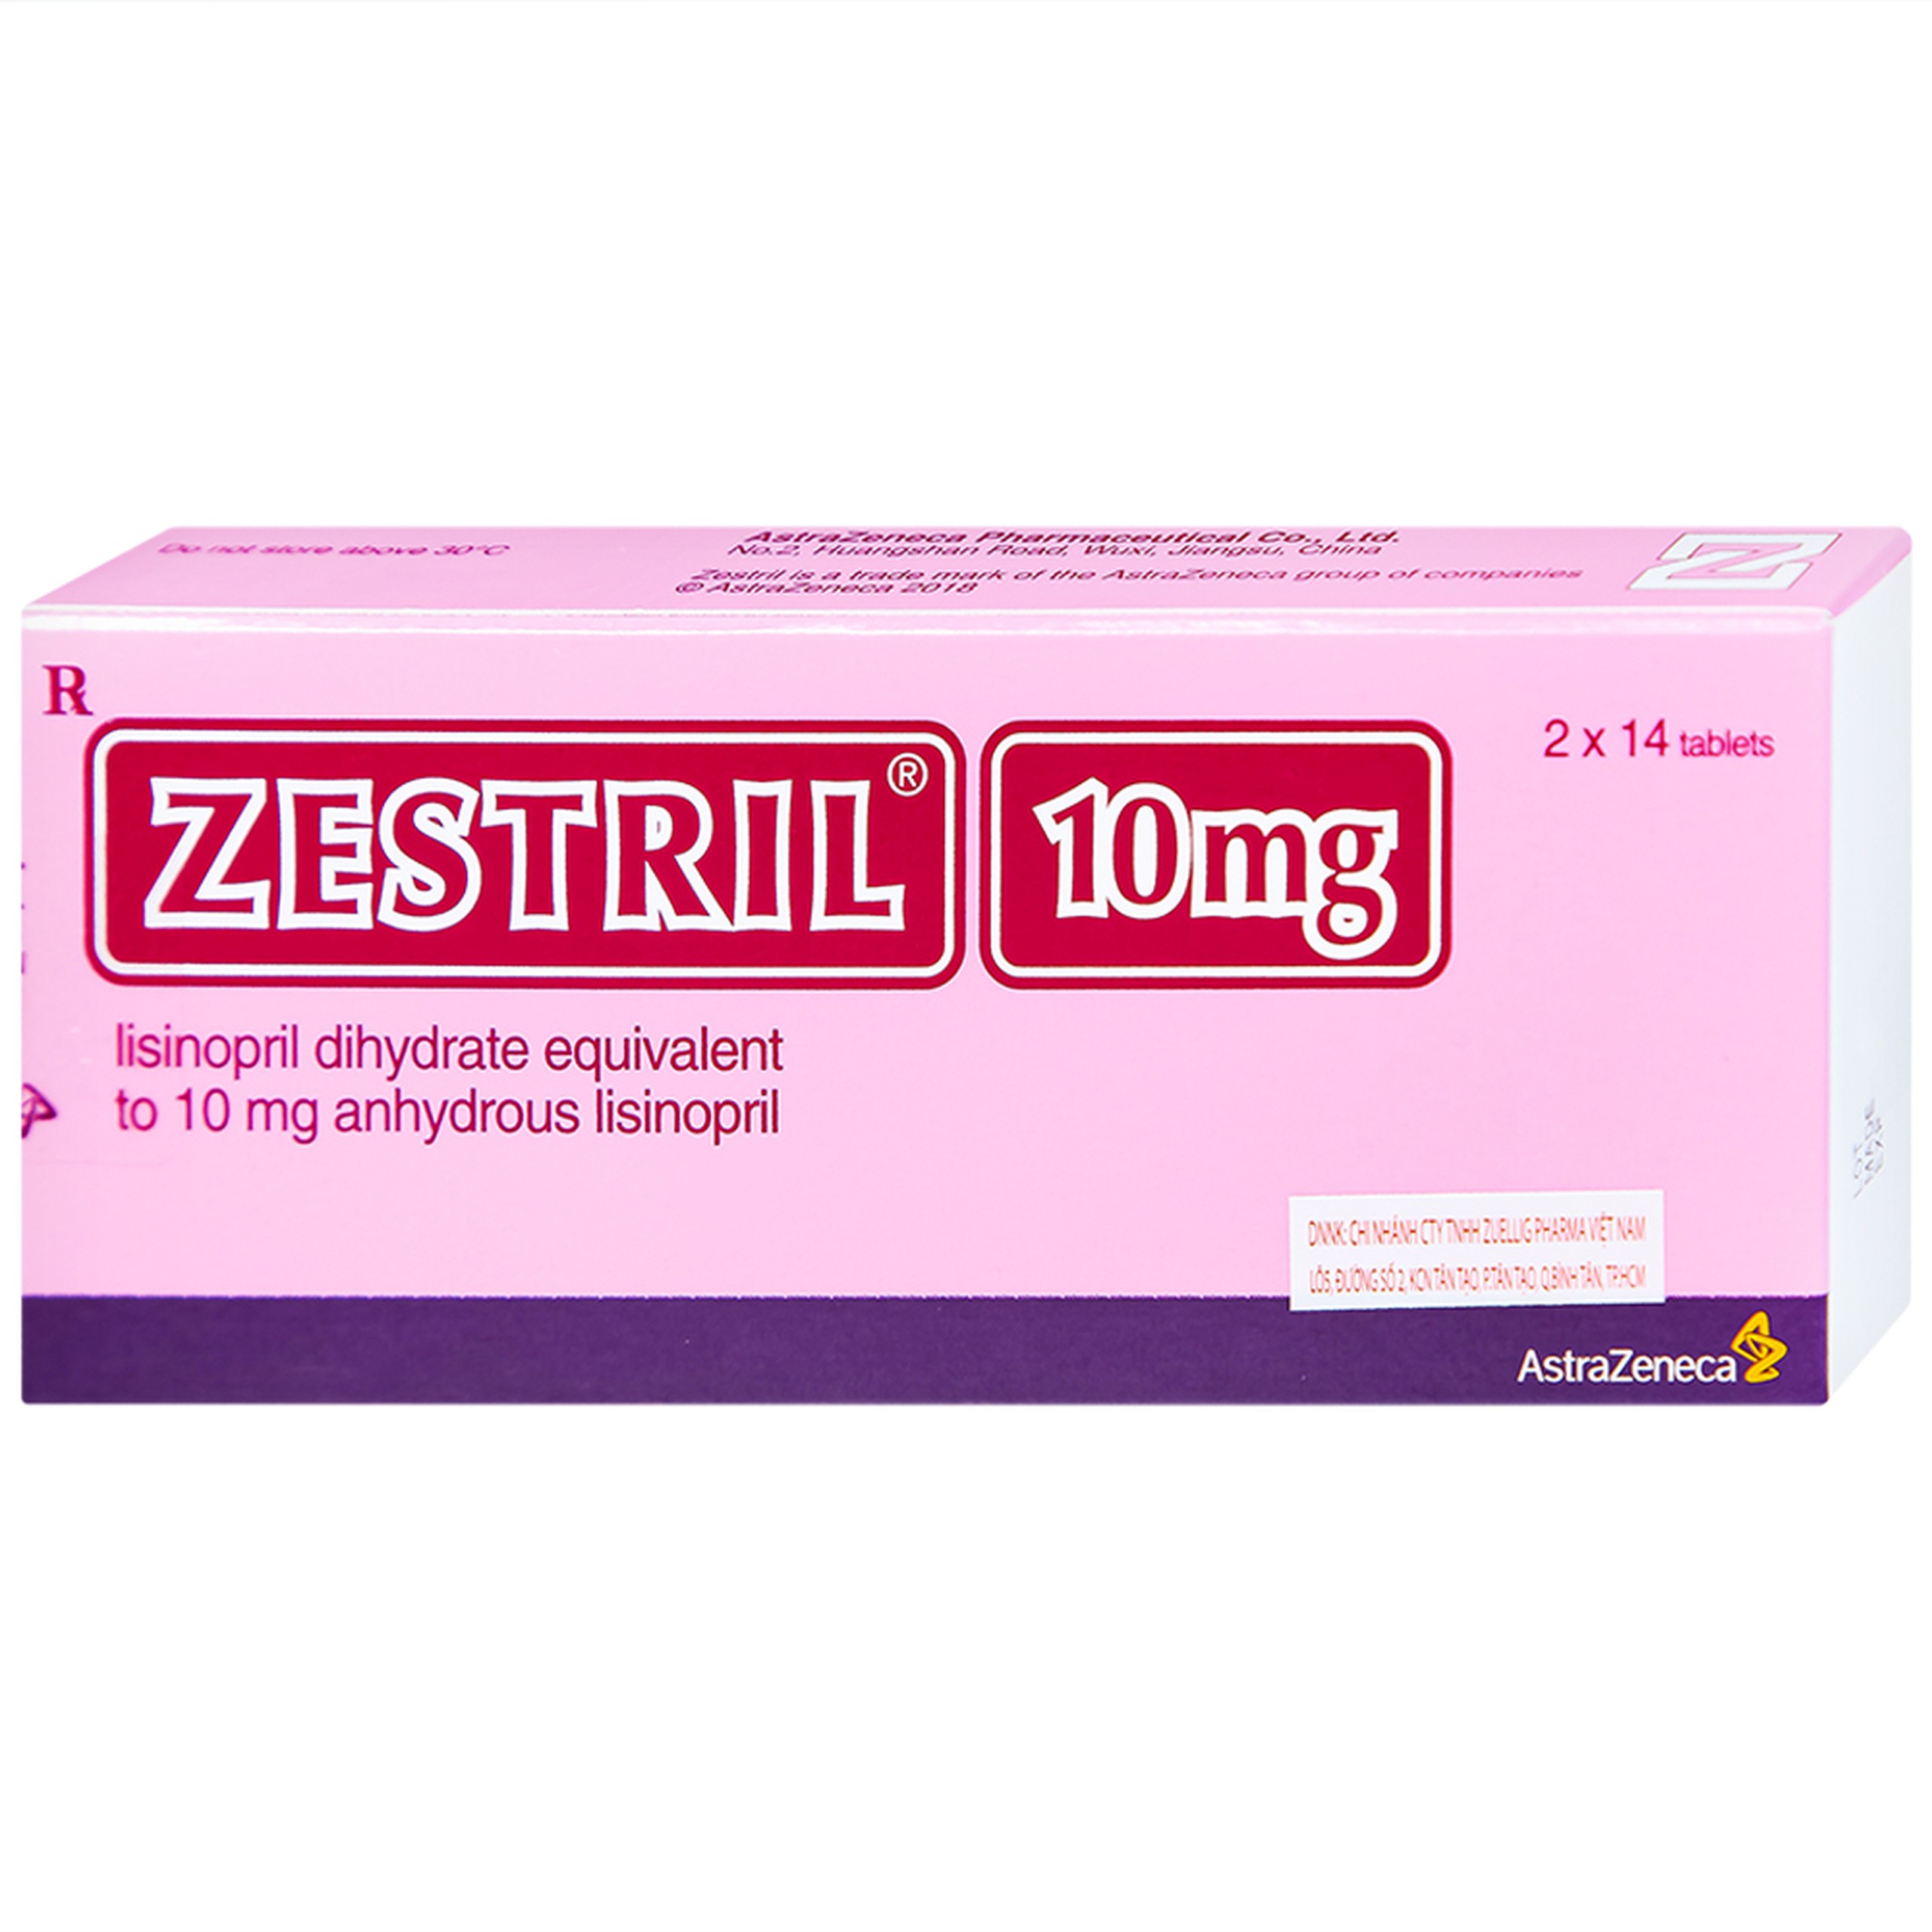 Thuốc Zestril 10mg AstraZeneca điều trị tăng huyết áp, suy tim (2 vỉ x 14 viên)